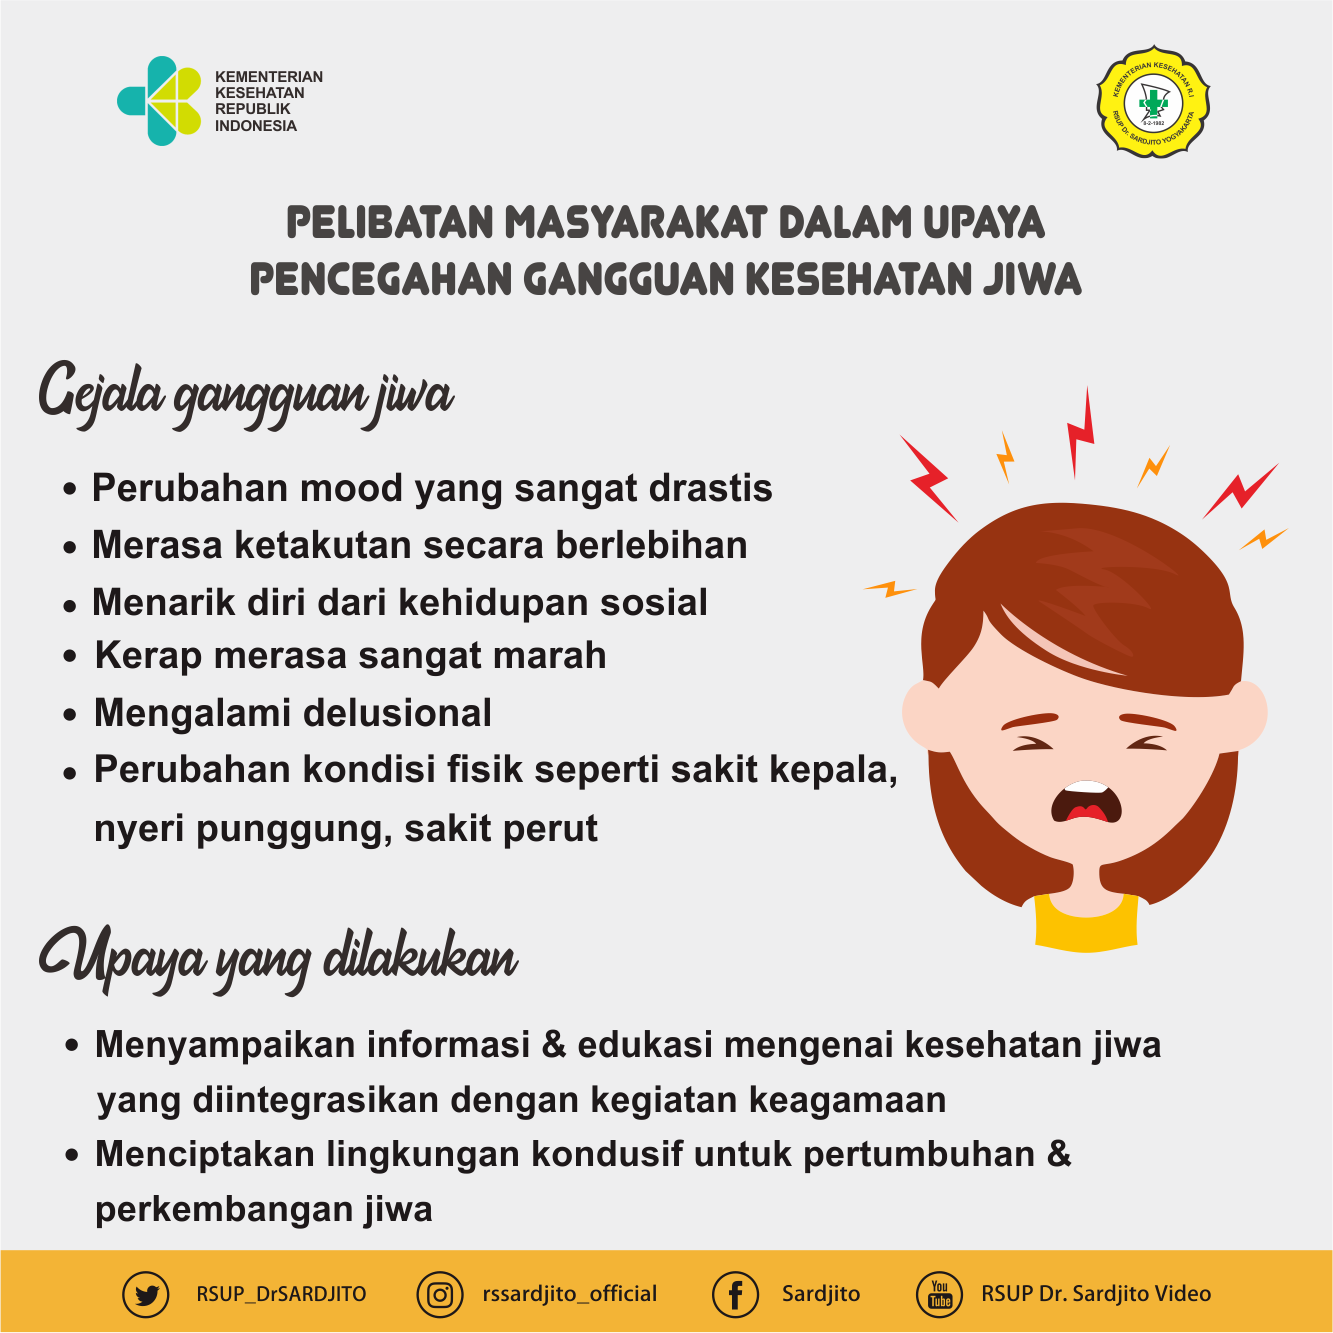 Indonesia Darurat Kesehatan Mental? 10 Fakta Kesehatan Mental Menurut WHO